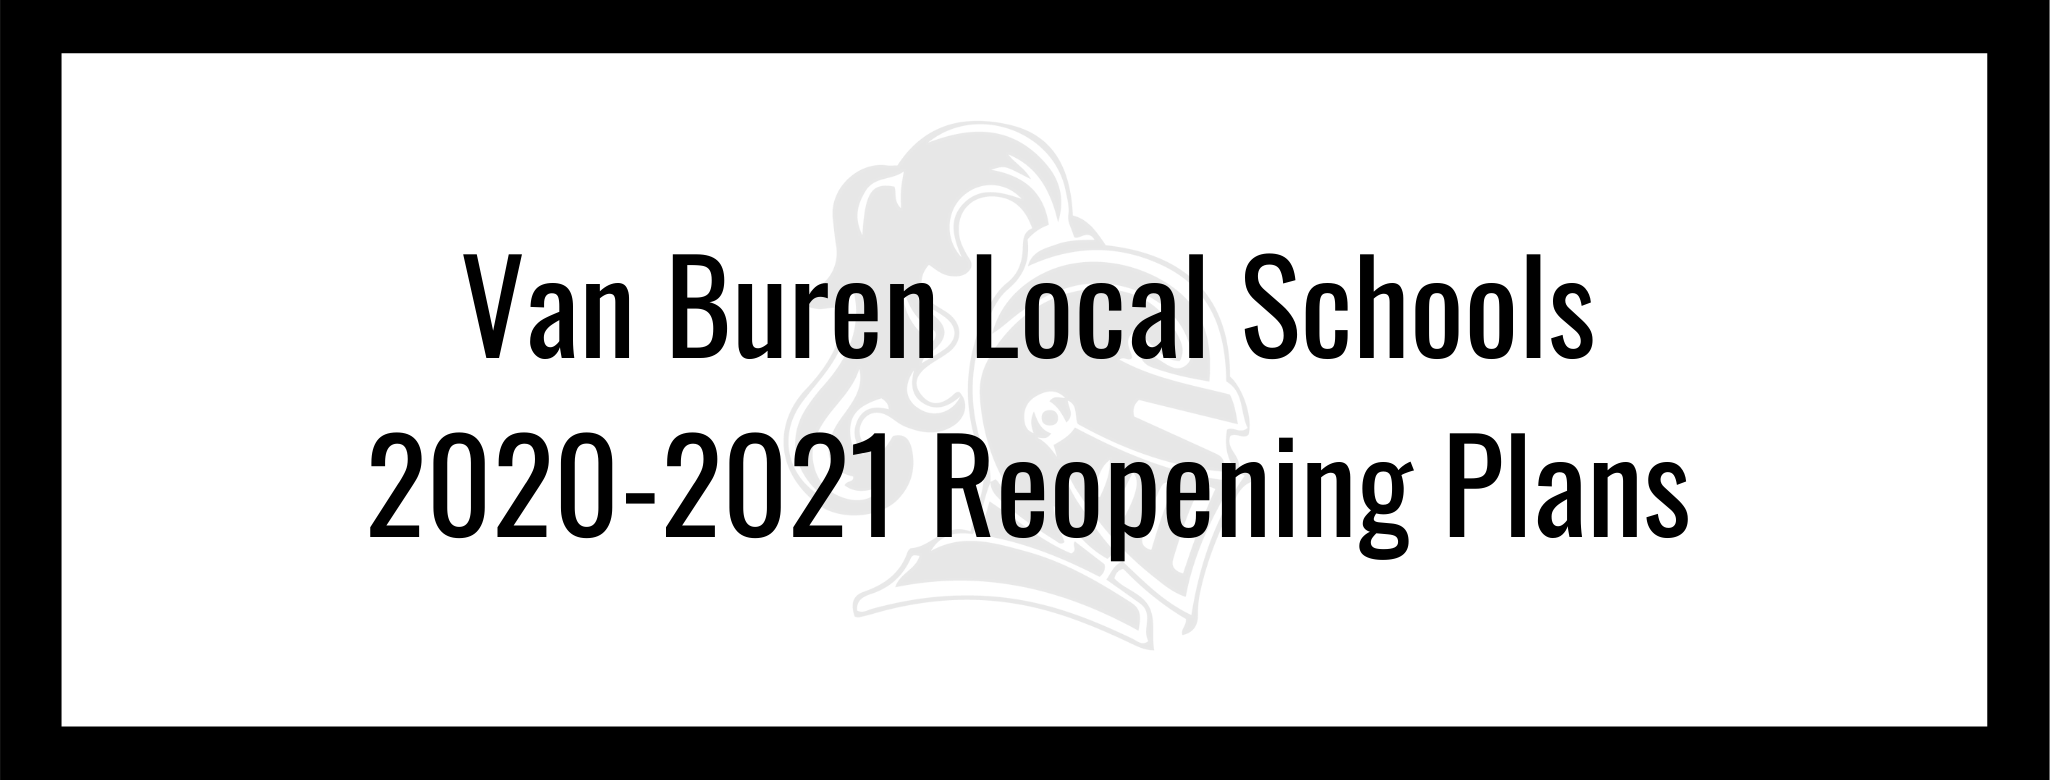 Van Buren Local Schools 2020-2021 Reopening Plans